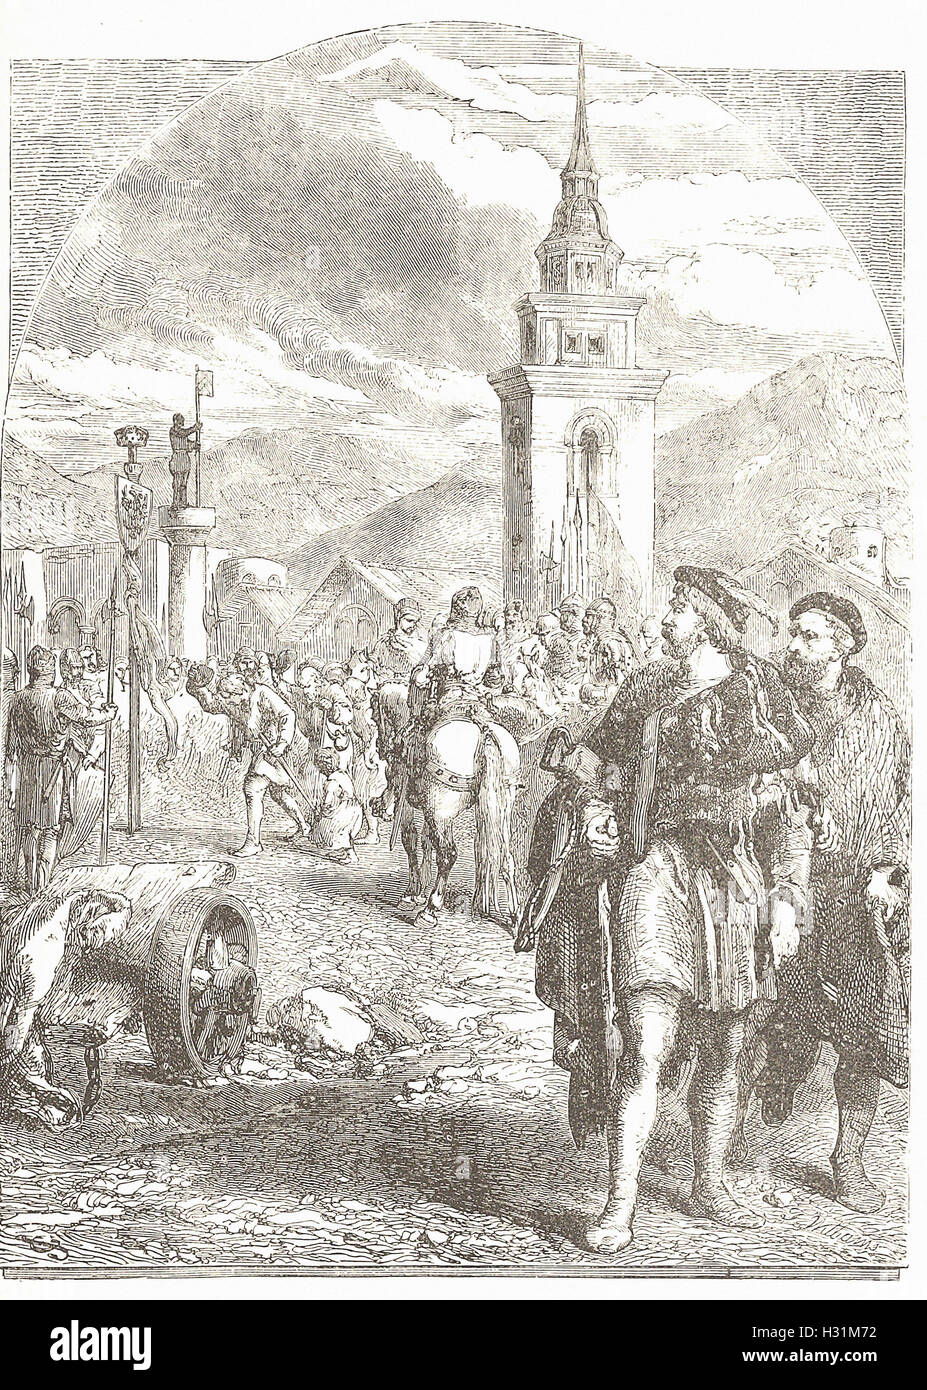 WILLIAM TELL DANS LE MARCHÉ D'Altdorf. - À partir de la 'Cassell's Illustrated Histoire universelle" - 1882 Banque D'Images